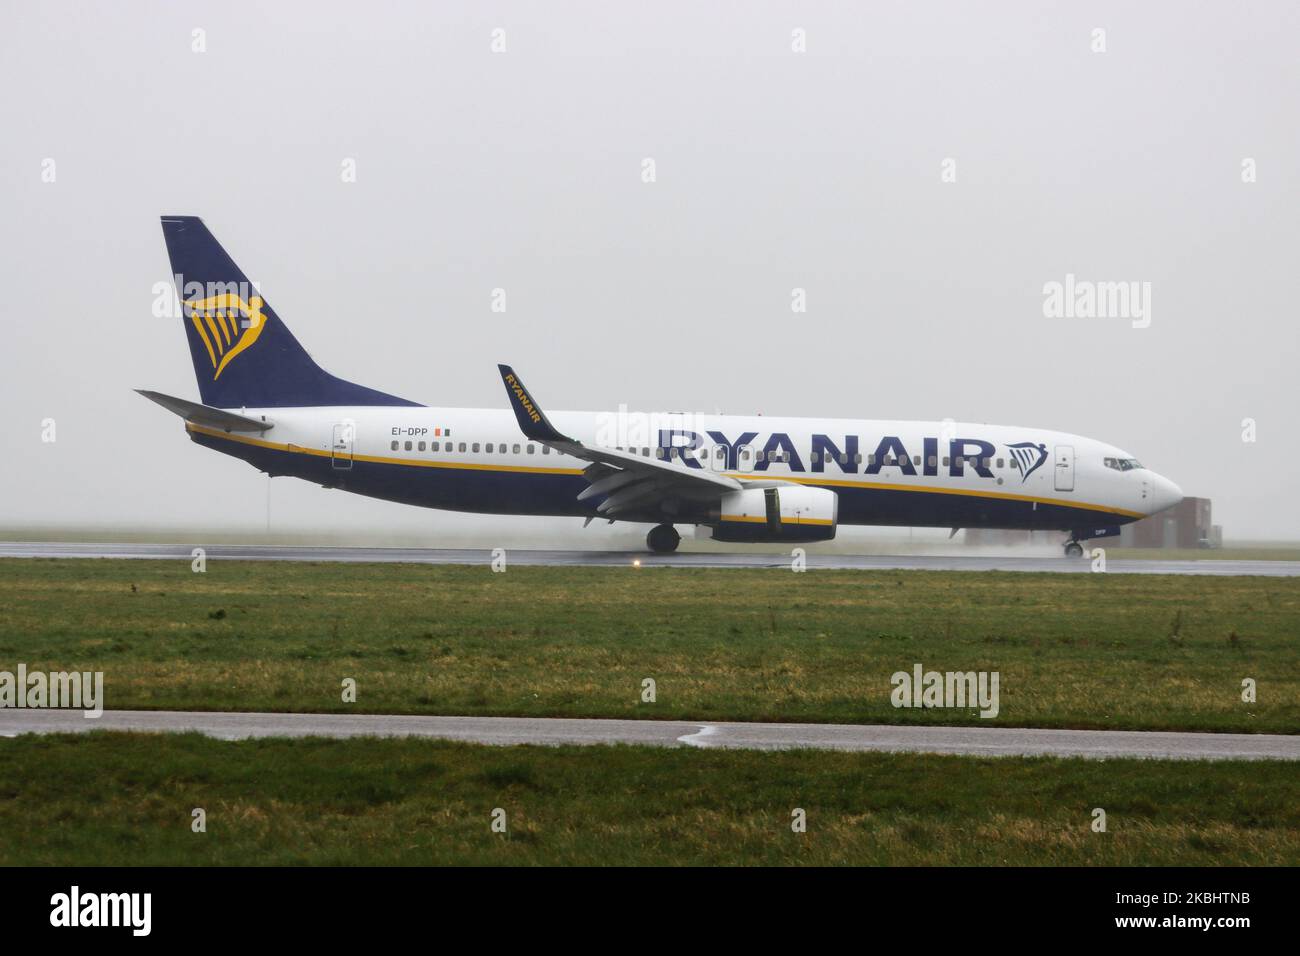 Un aeromobile Ryanair Boeing 737-800 o 737NG visto atterrare sulla pista di Ponderbaan e tassare in condizioni di maltempo con una tempesta di pioggia, alta velocità del vento e foschia all'aeroporto internazionale EHAM di Amsterdam Schiphol AMS nei Paesi Bassi il 24 febbraio 2020. L'aereo ha la registrazione EI-DPP. Ryanair RYR FR è una compagnia aerea irlandese a basso costo - bilancio uno dei più grandi d'Europa. (Foto di Nicolas Economou/NurPhoto) Foto Stock